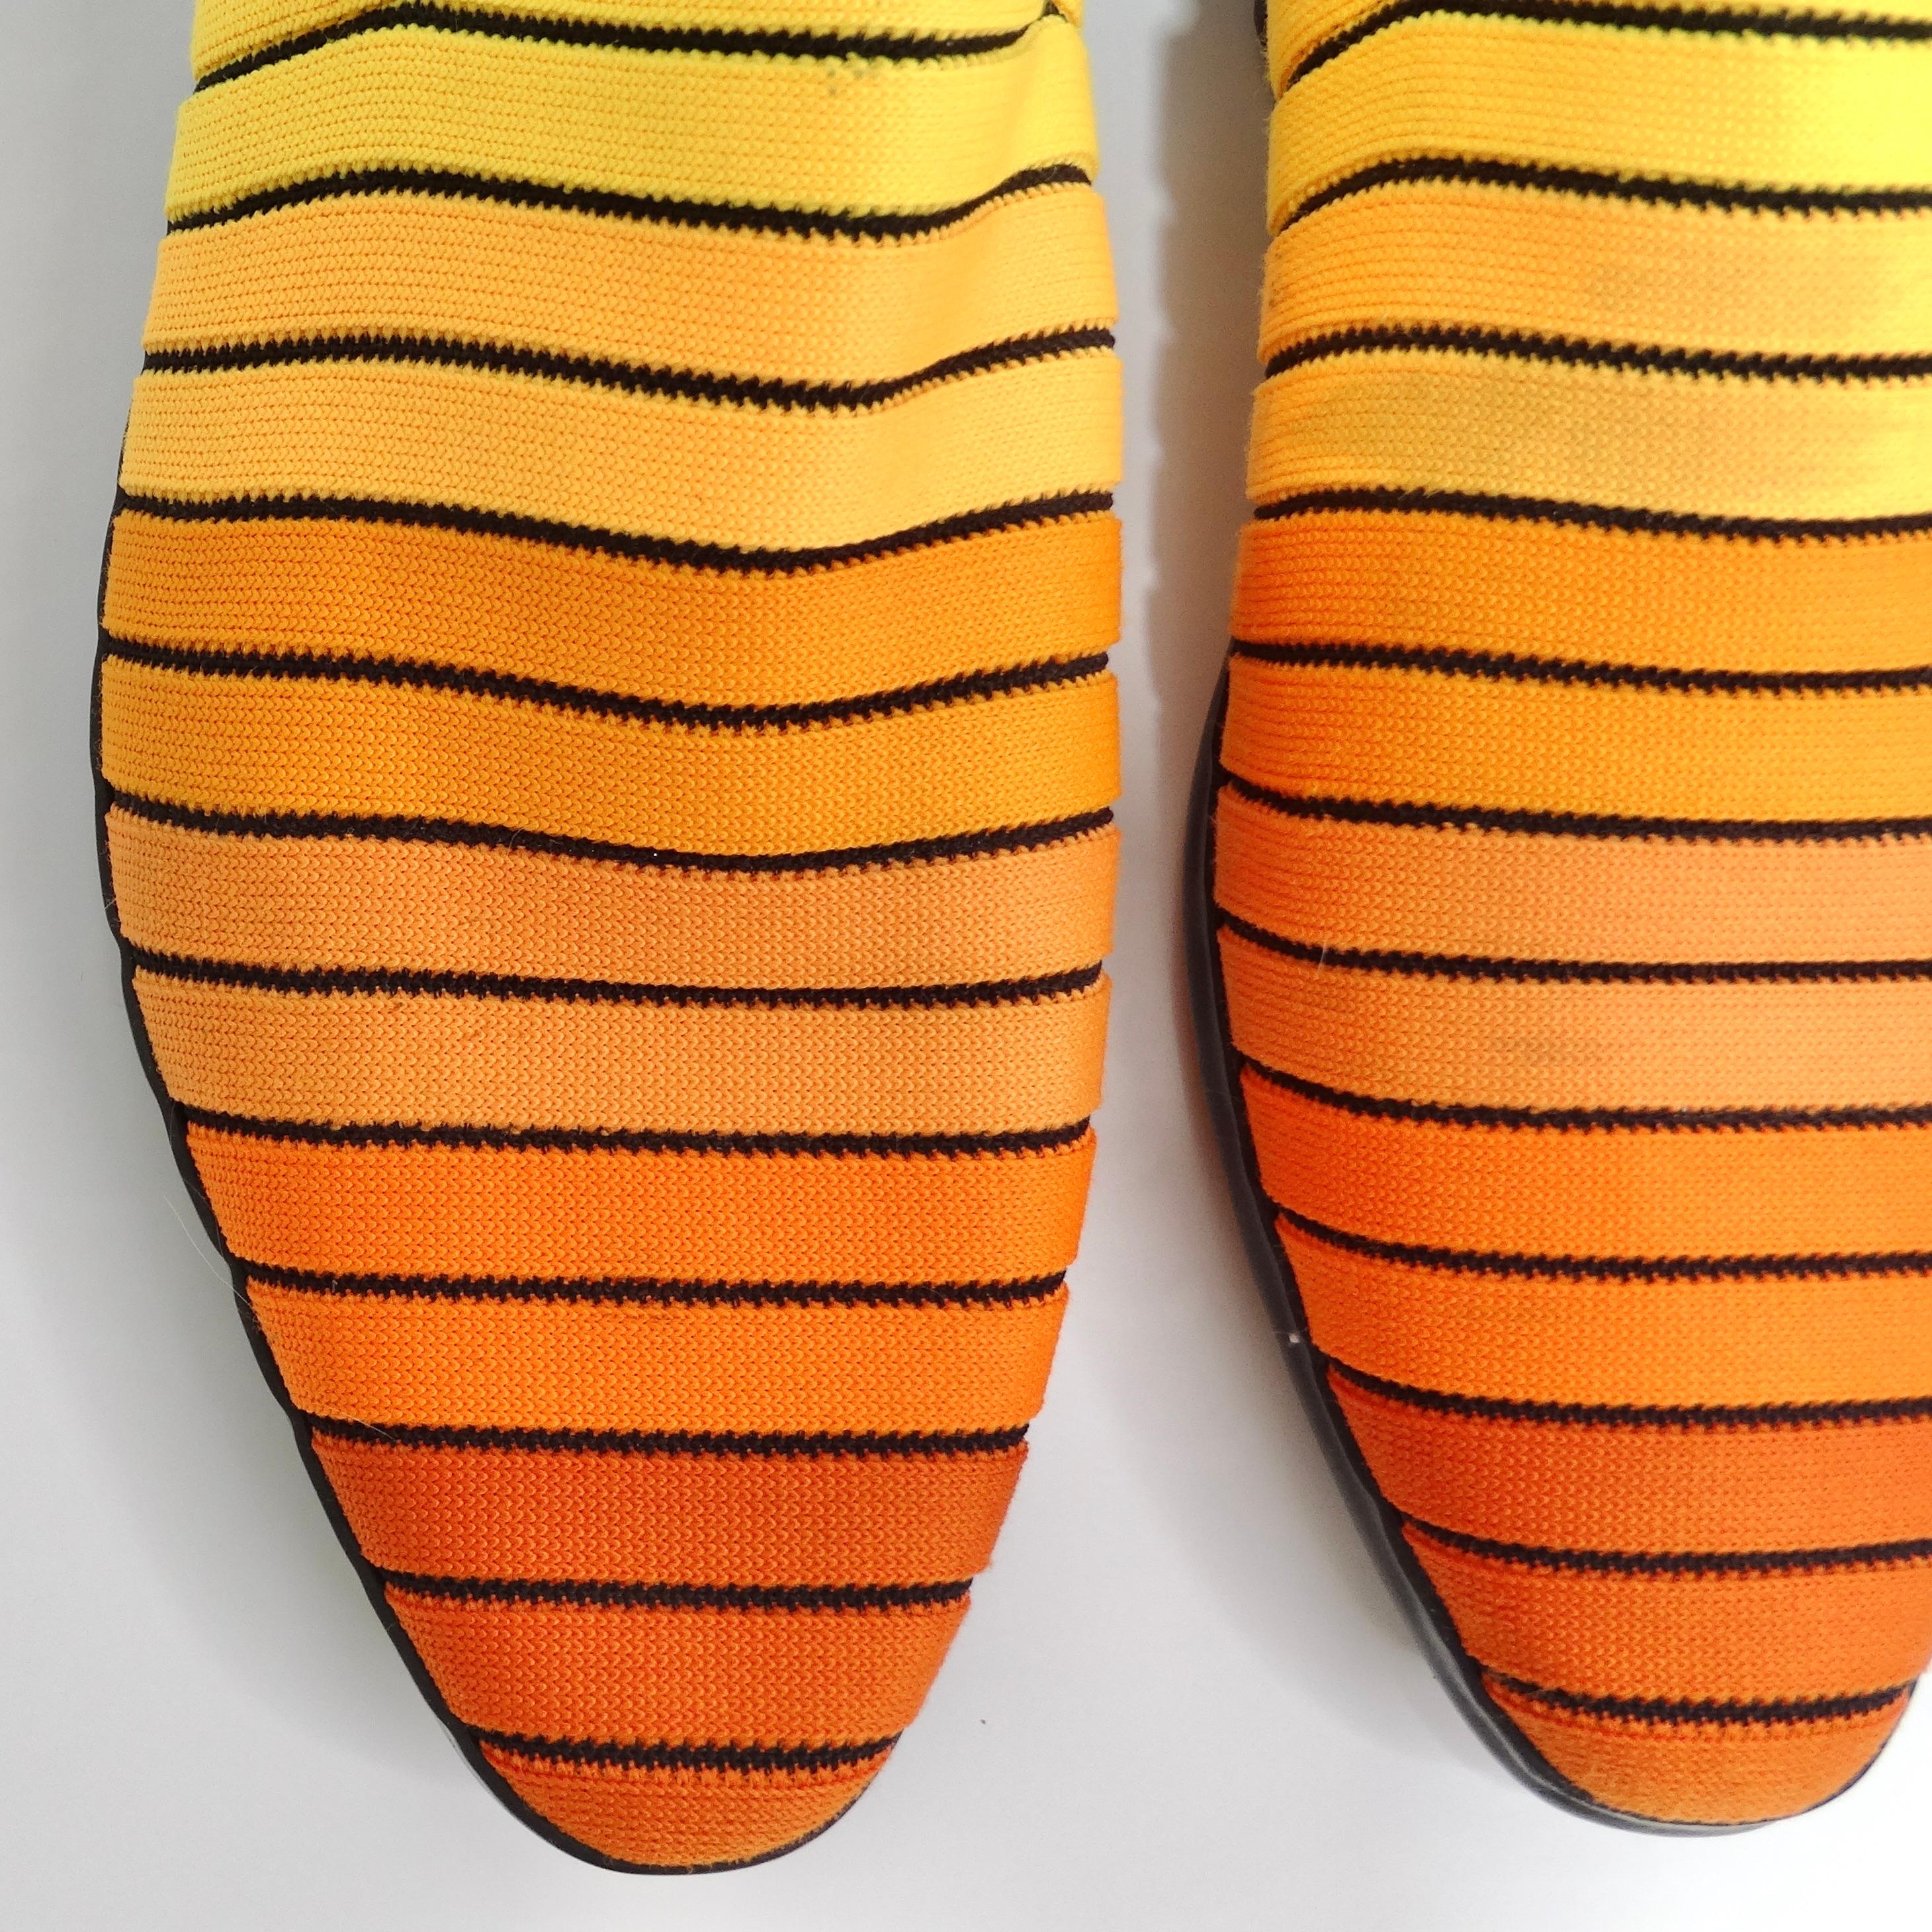 Voici les chaussures plates orange dégradées Issey Miyake de la collection emblématique Pleats Please. Ces superbes chaussures à enfiler datant du début des années 2000 présentent un motif dégradé unique en tricot qui passe d'un jaune profond à un